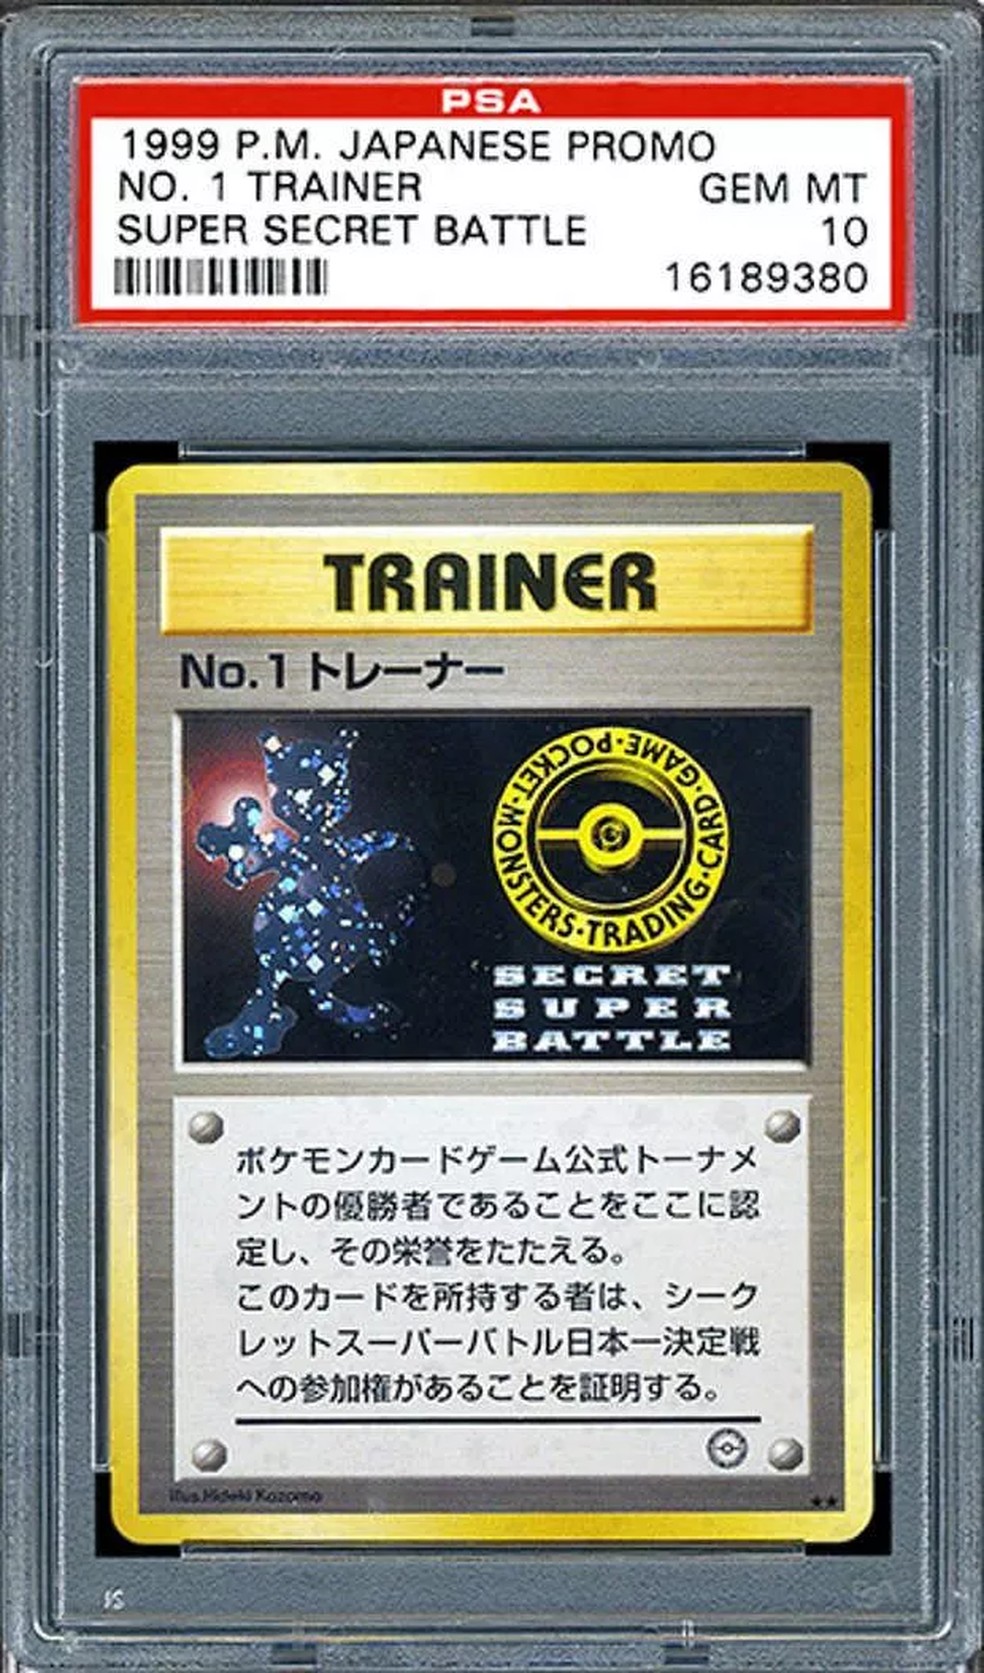 Pokémon TCG: carta rara do Charizard é vendida por R$ 1,7 milhão